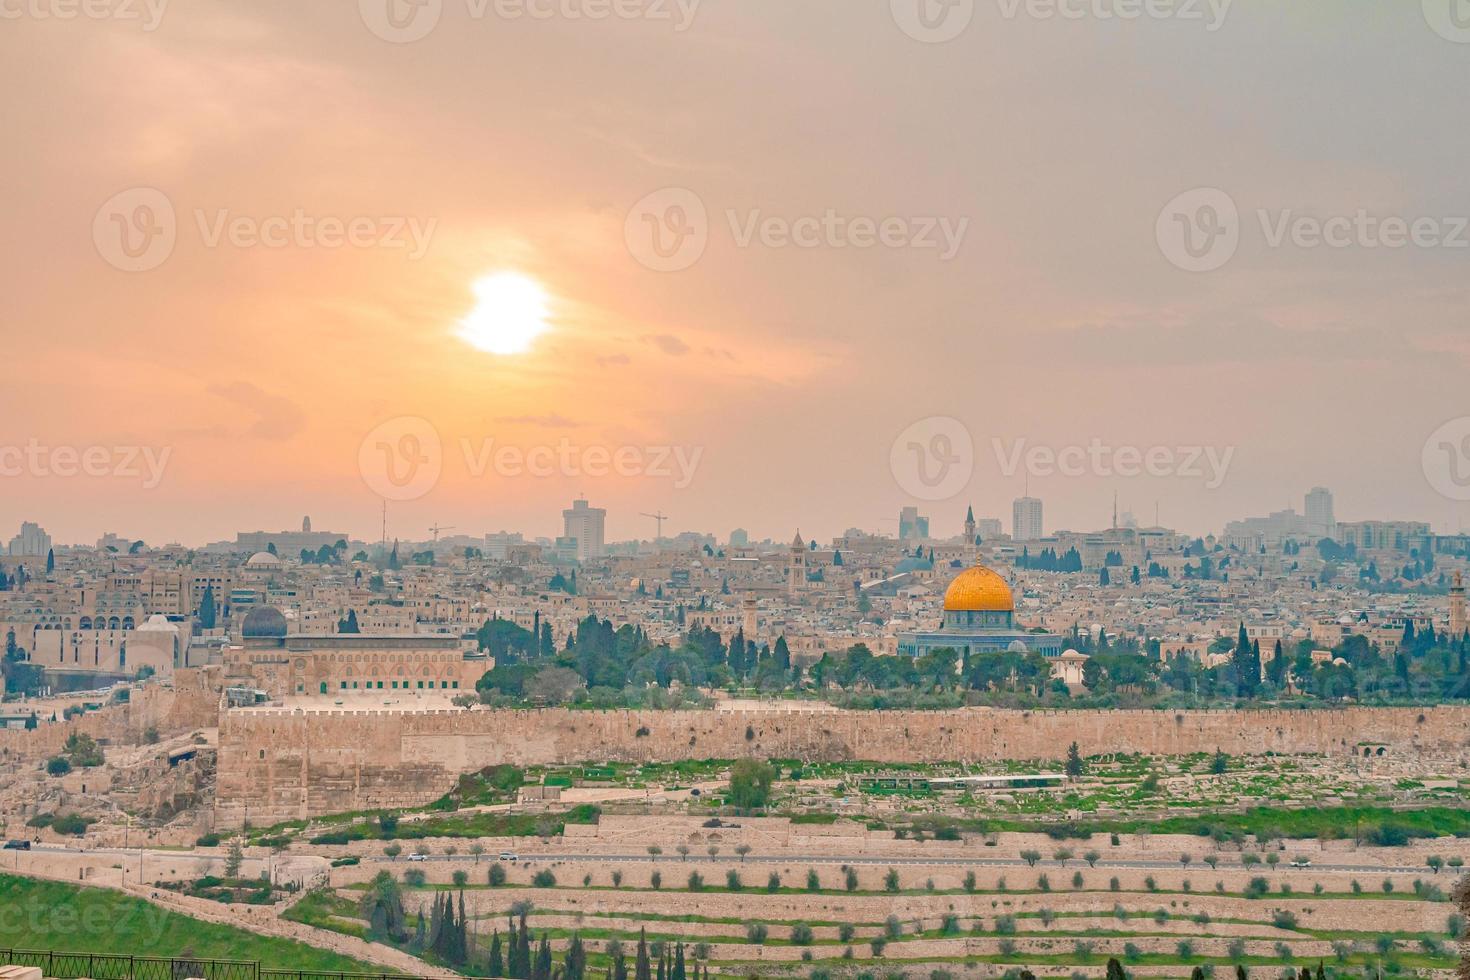 vue panoramique sur la vieille ville de jérusalem et le mont du temple lors d'un spectaculaire coucher de soleil coloré photo